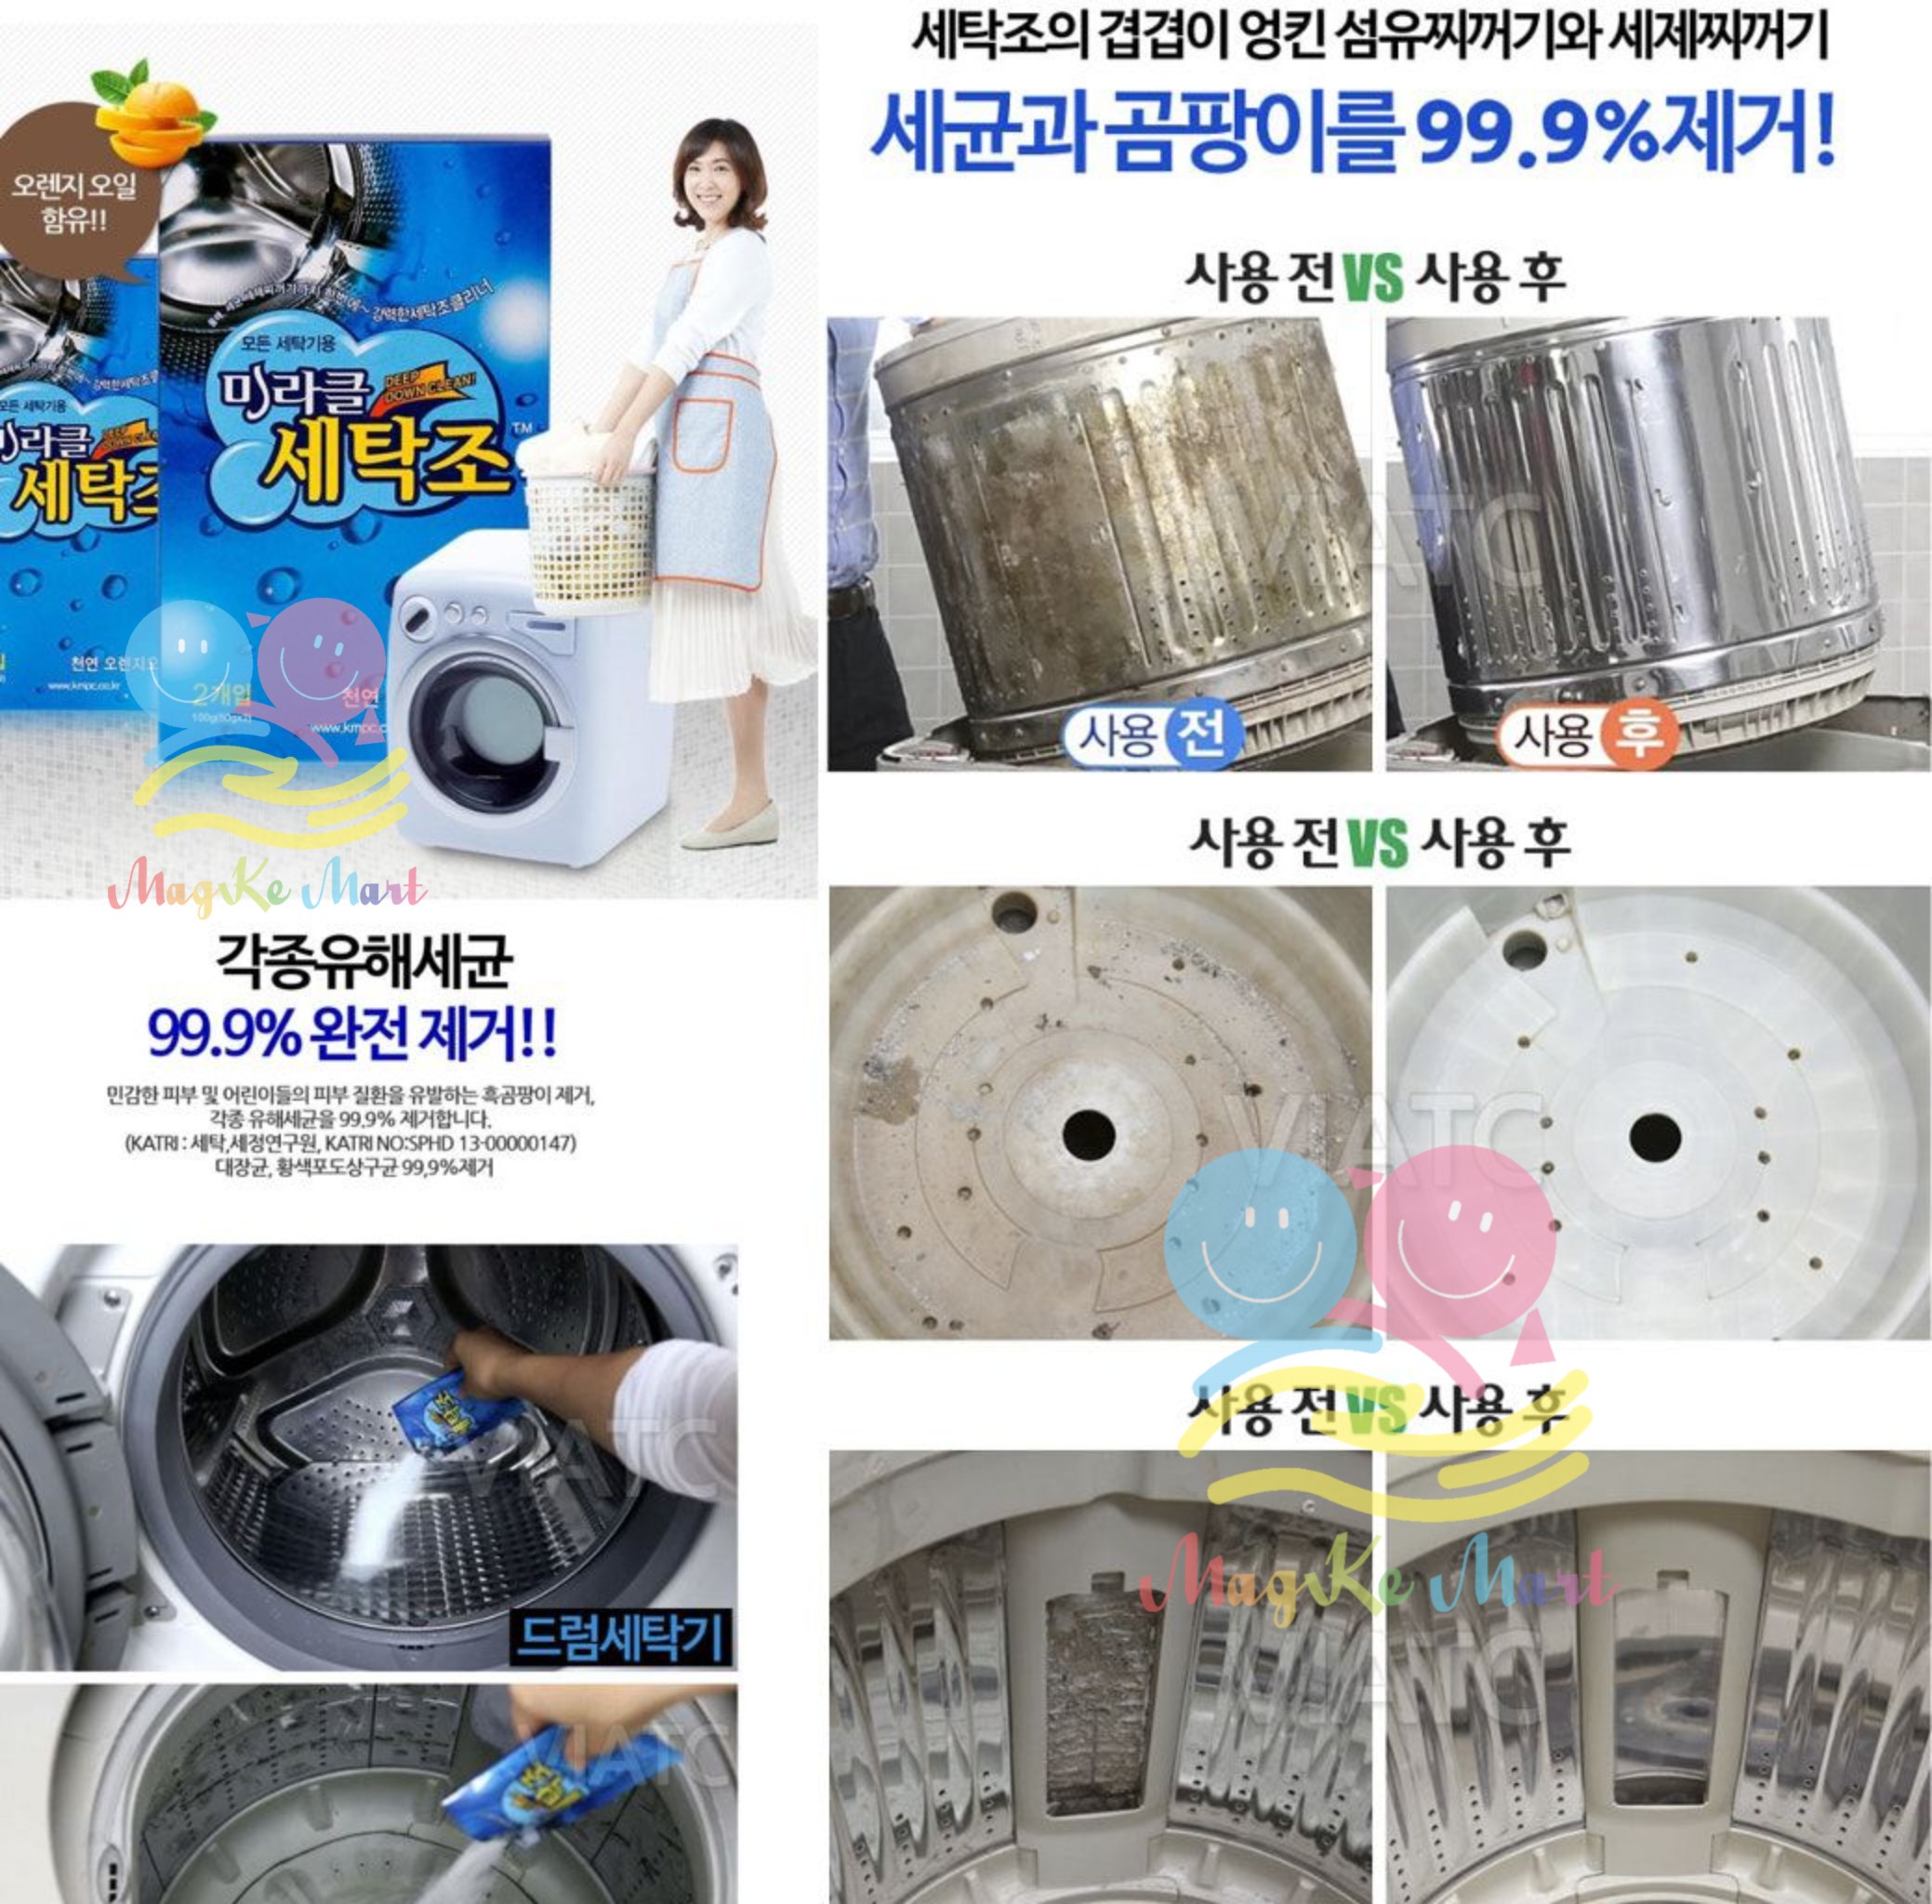 韓國 Miracle 強效洗衣機清潔劑(香橙味) 100g (1盒2包入)